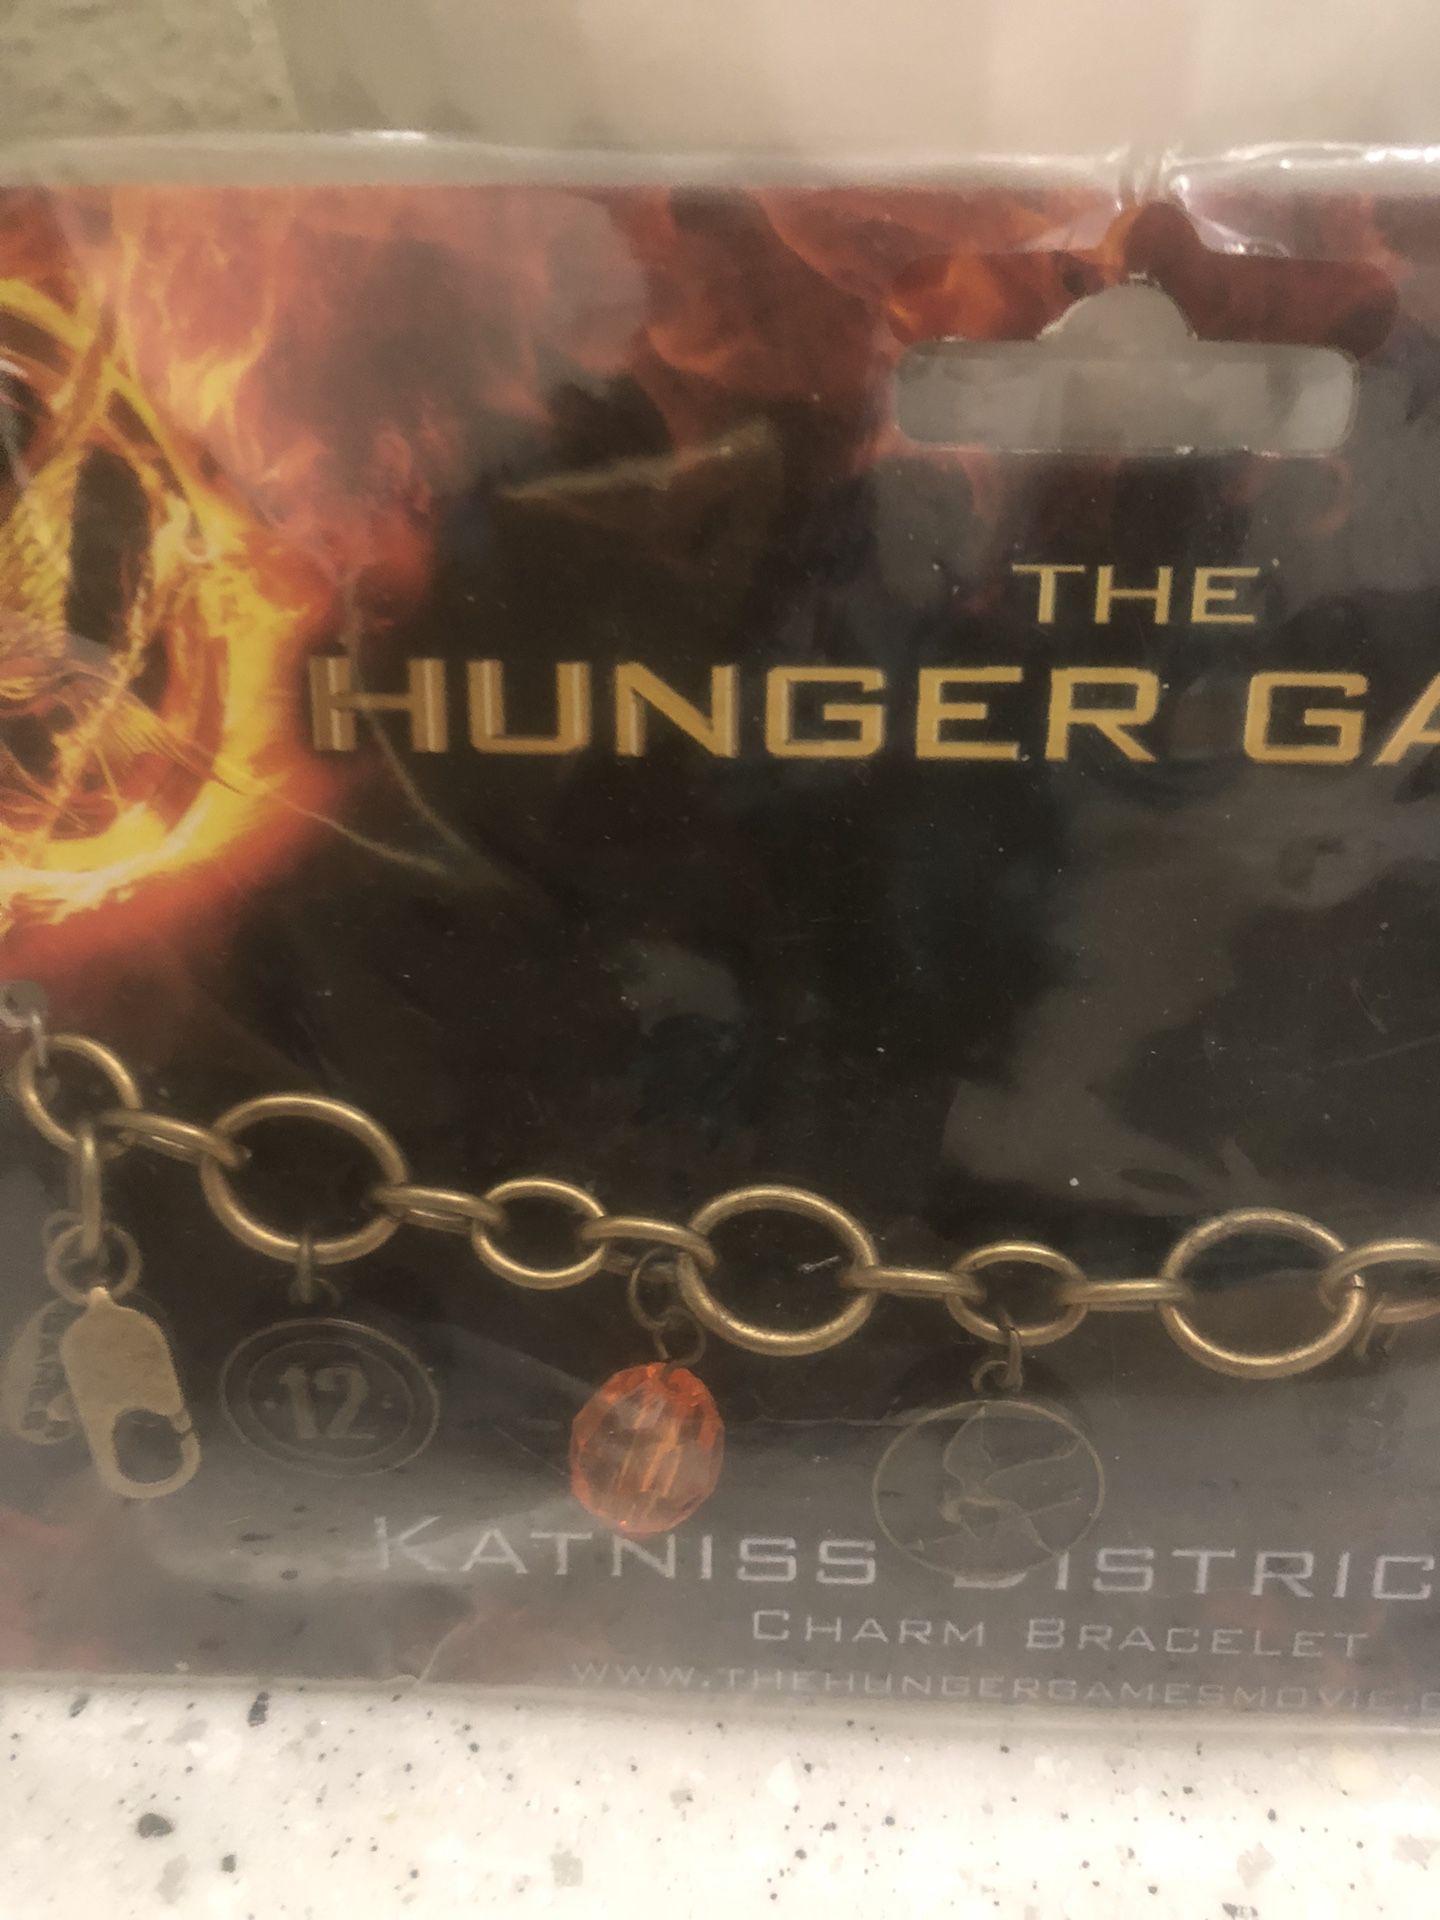 The Hunger Games Charm Bracelet.